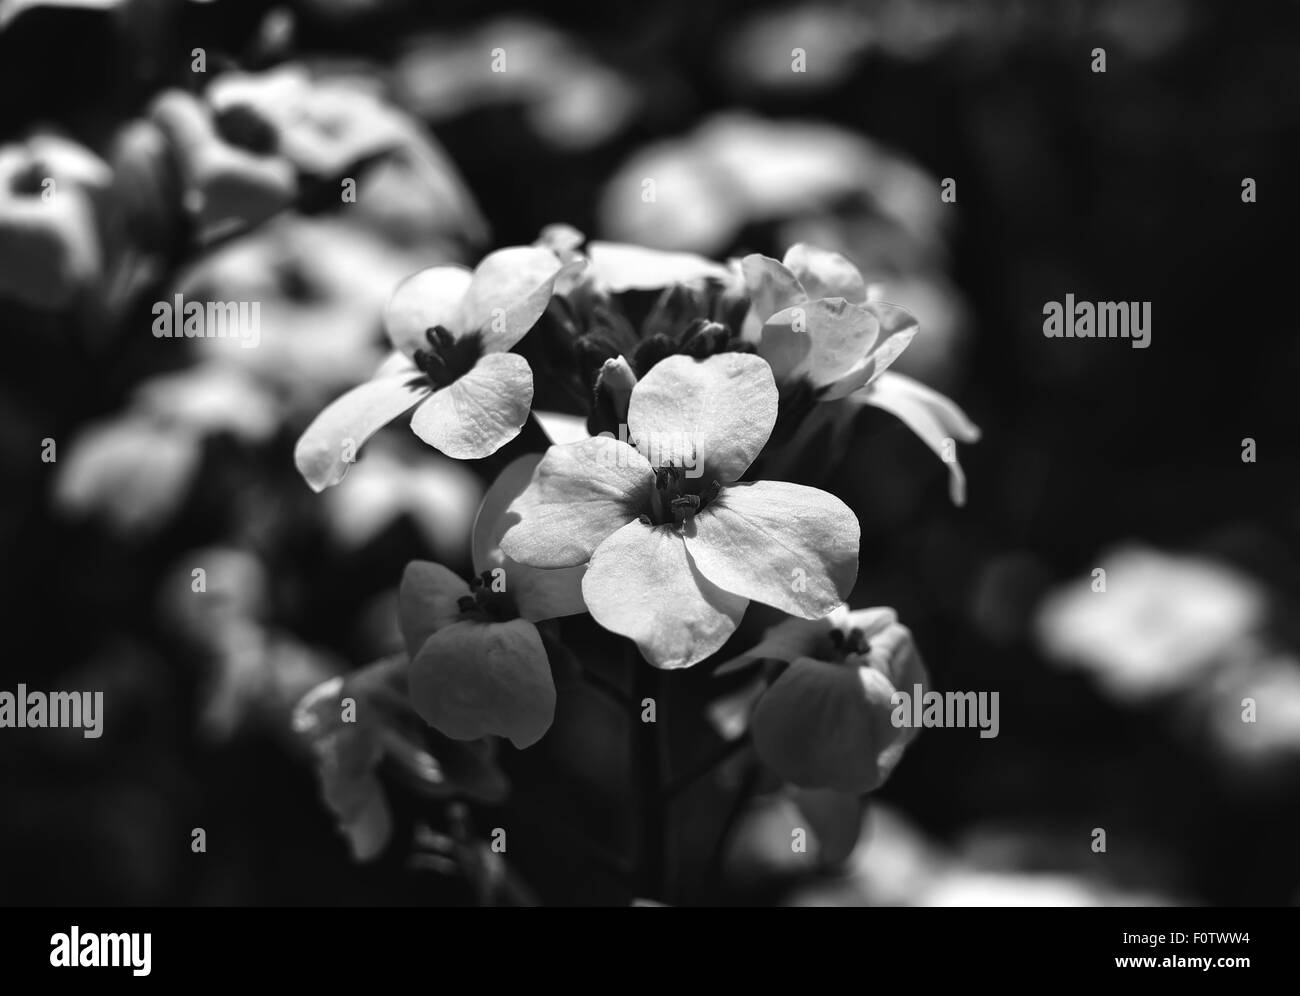 Arabis fleurs blanches. Fleurs du jardin Banque D'Images